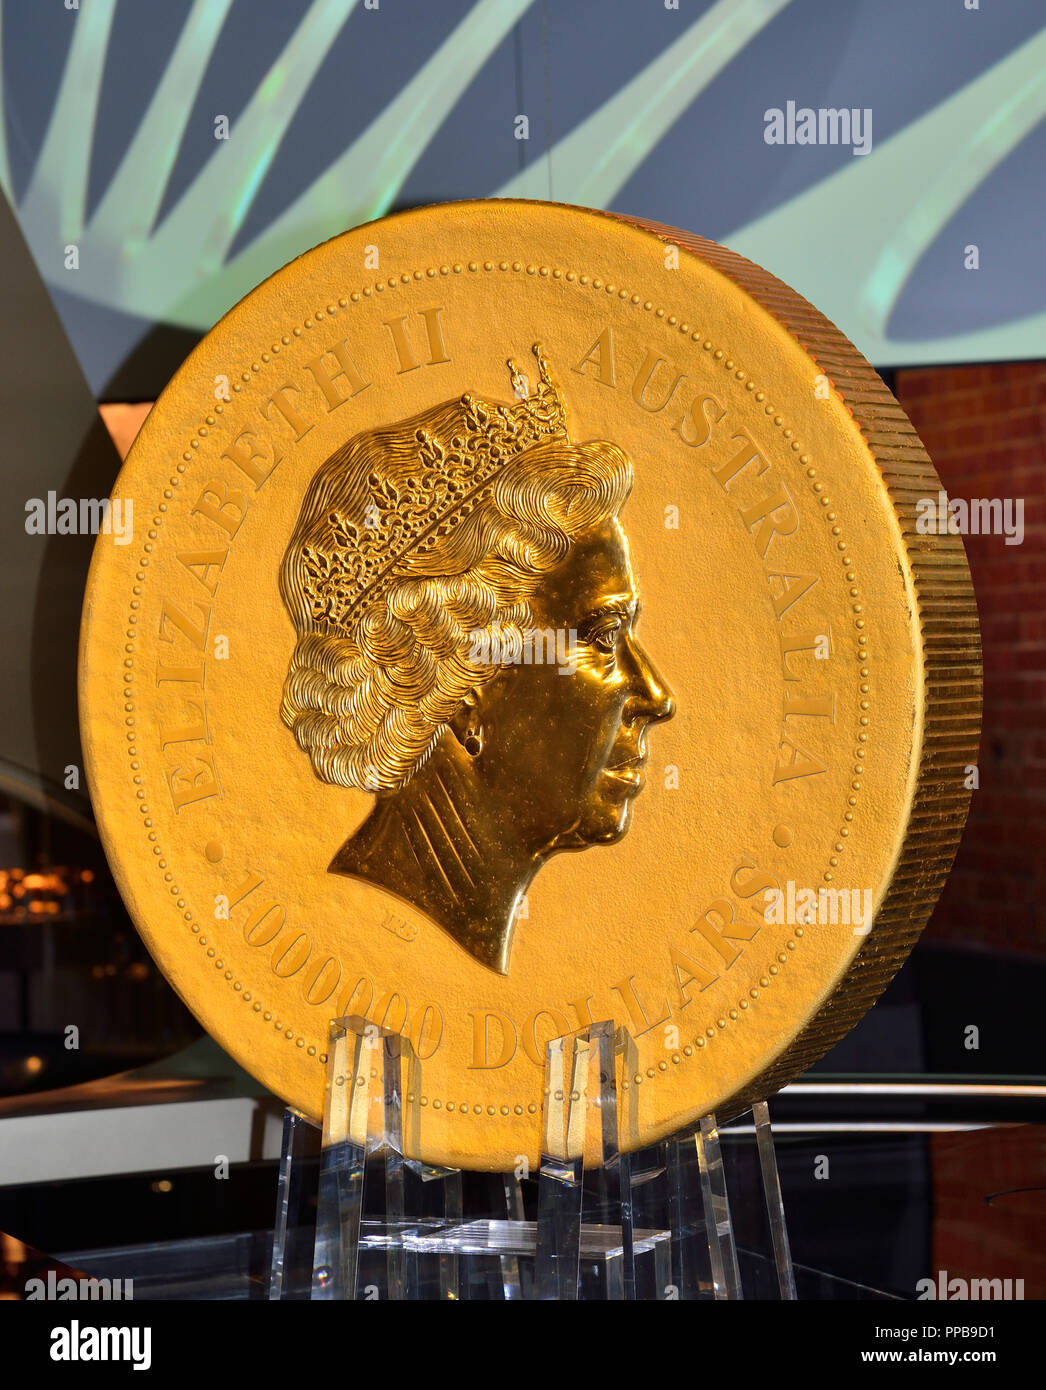 Der Guinness World Record australische Känguru eine Tonne Gold Münze zeigt ein Portrait von Königin Elizabeth II (vorne) Perth Mint, Perth, WA, Australien Stockfoto